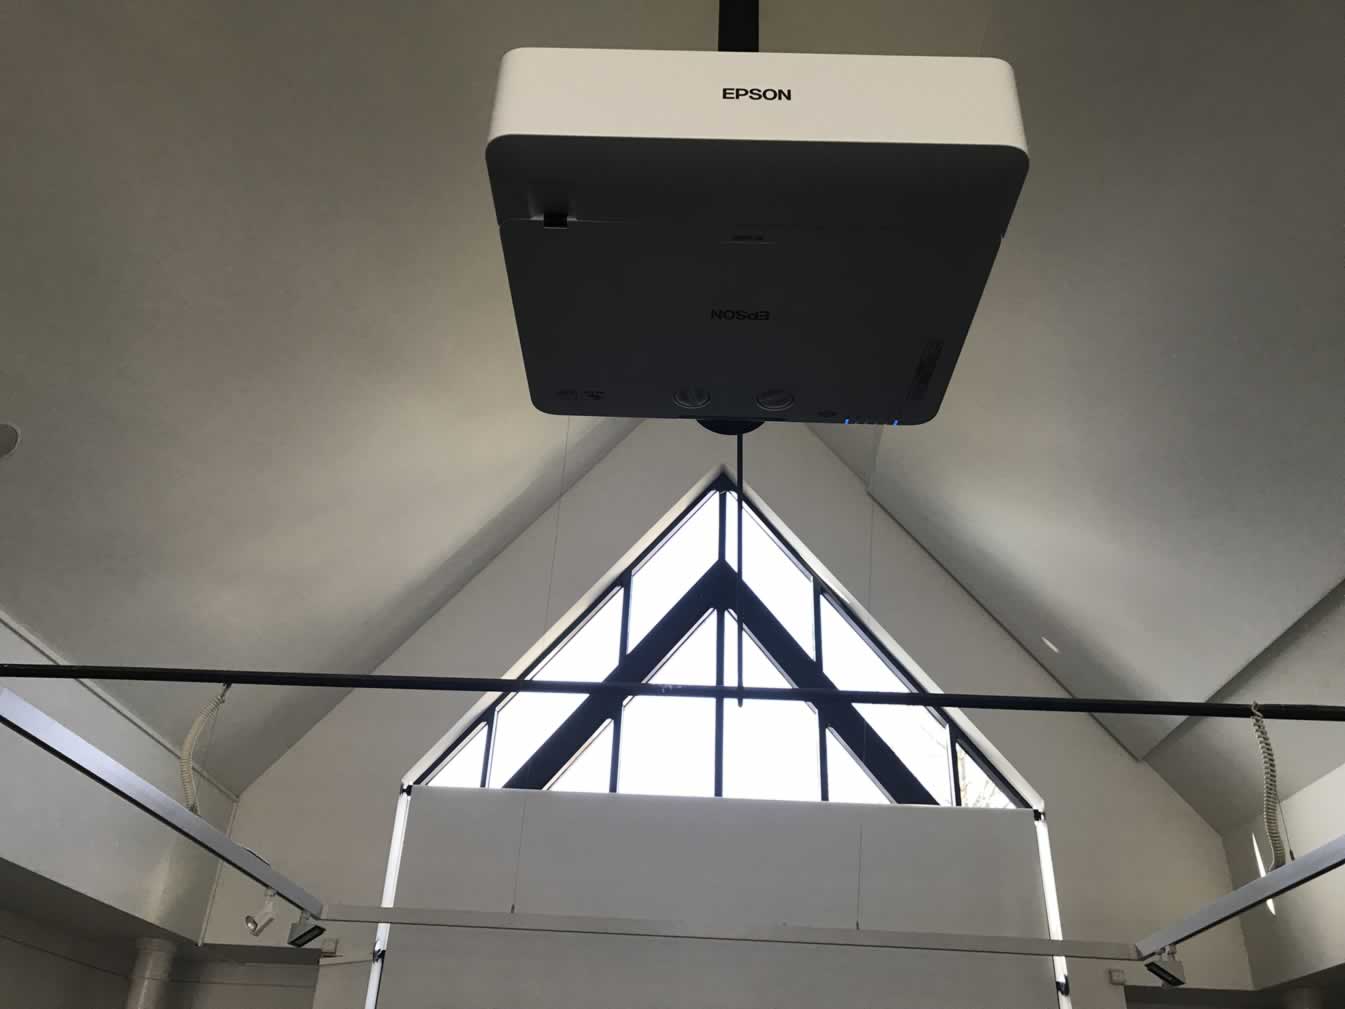 Digitale gemeenteraadzaal met Epson installatie projector met laser projectie technologie